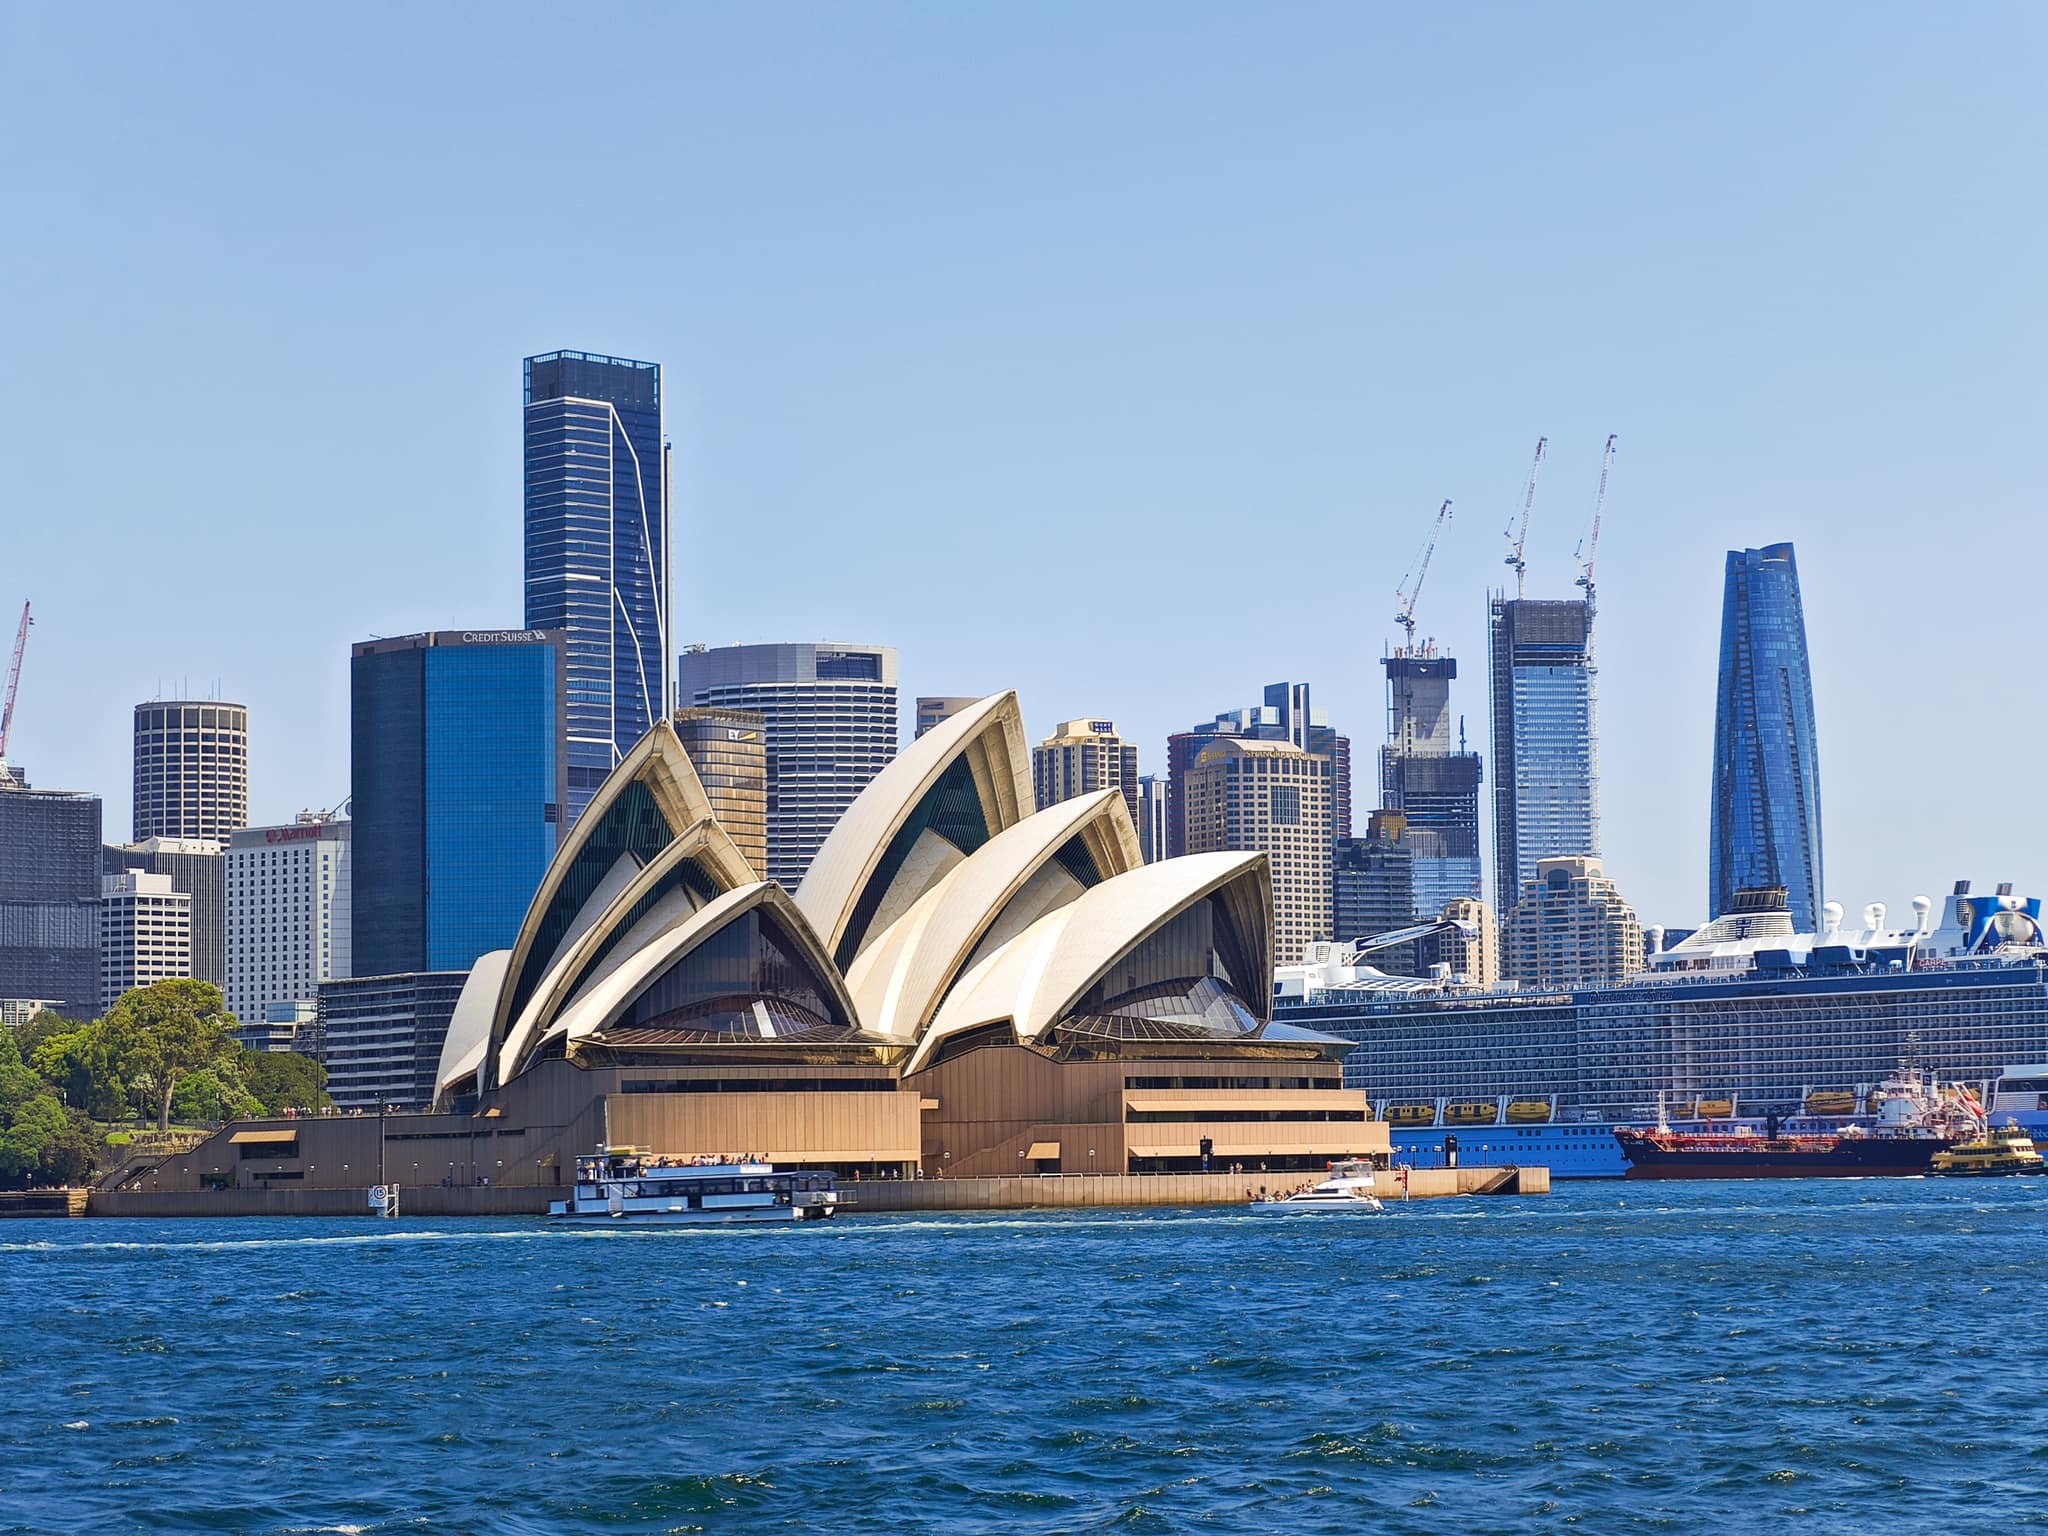 Khám phá nhà hát Opera Sydney nổi tiếng của nước Úc